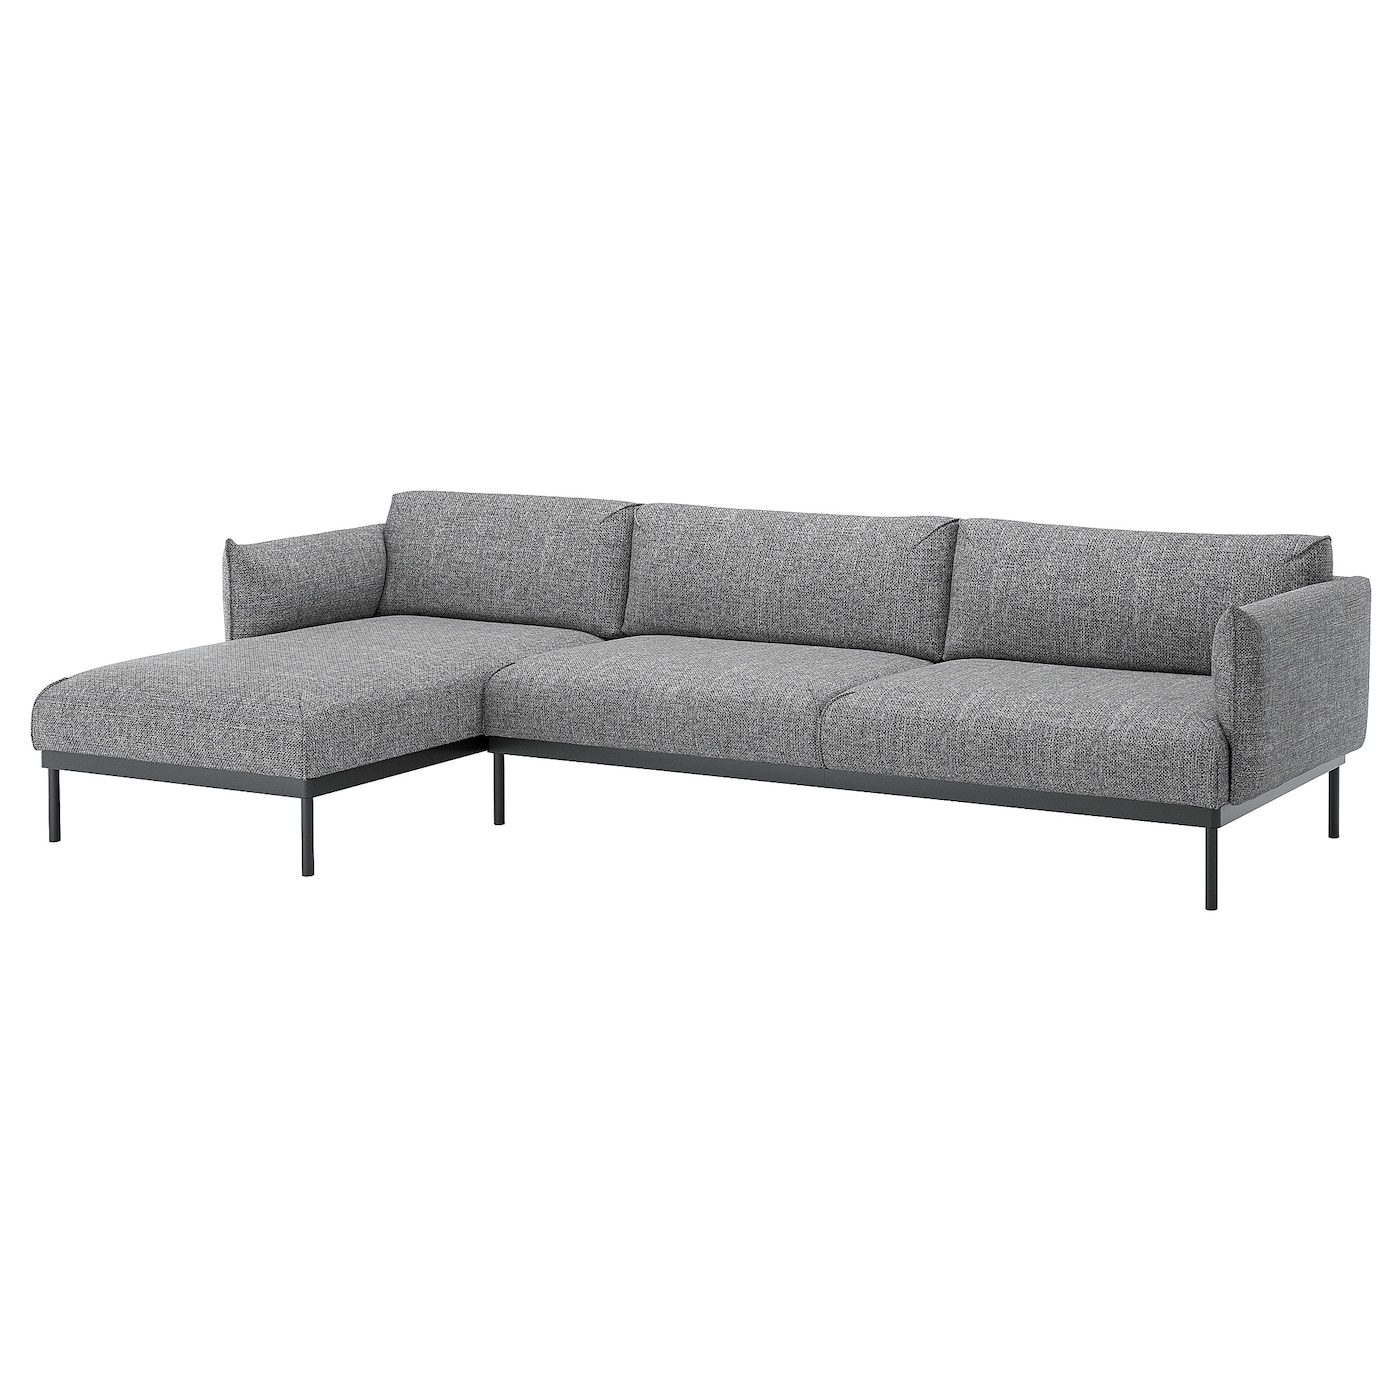 ЭПЛАРИД 4-местный диван + диван, Лейде серый/черный ÄPPLARYD IKEA